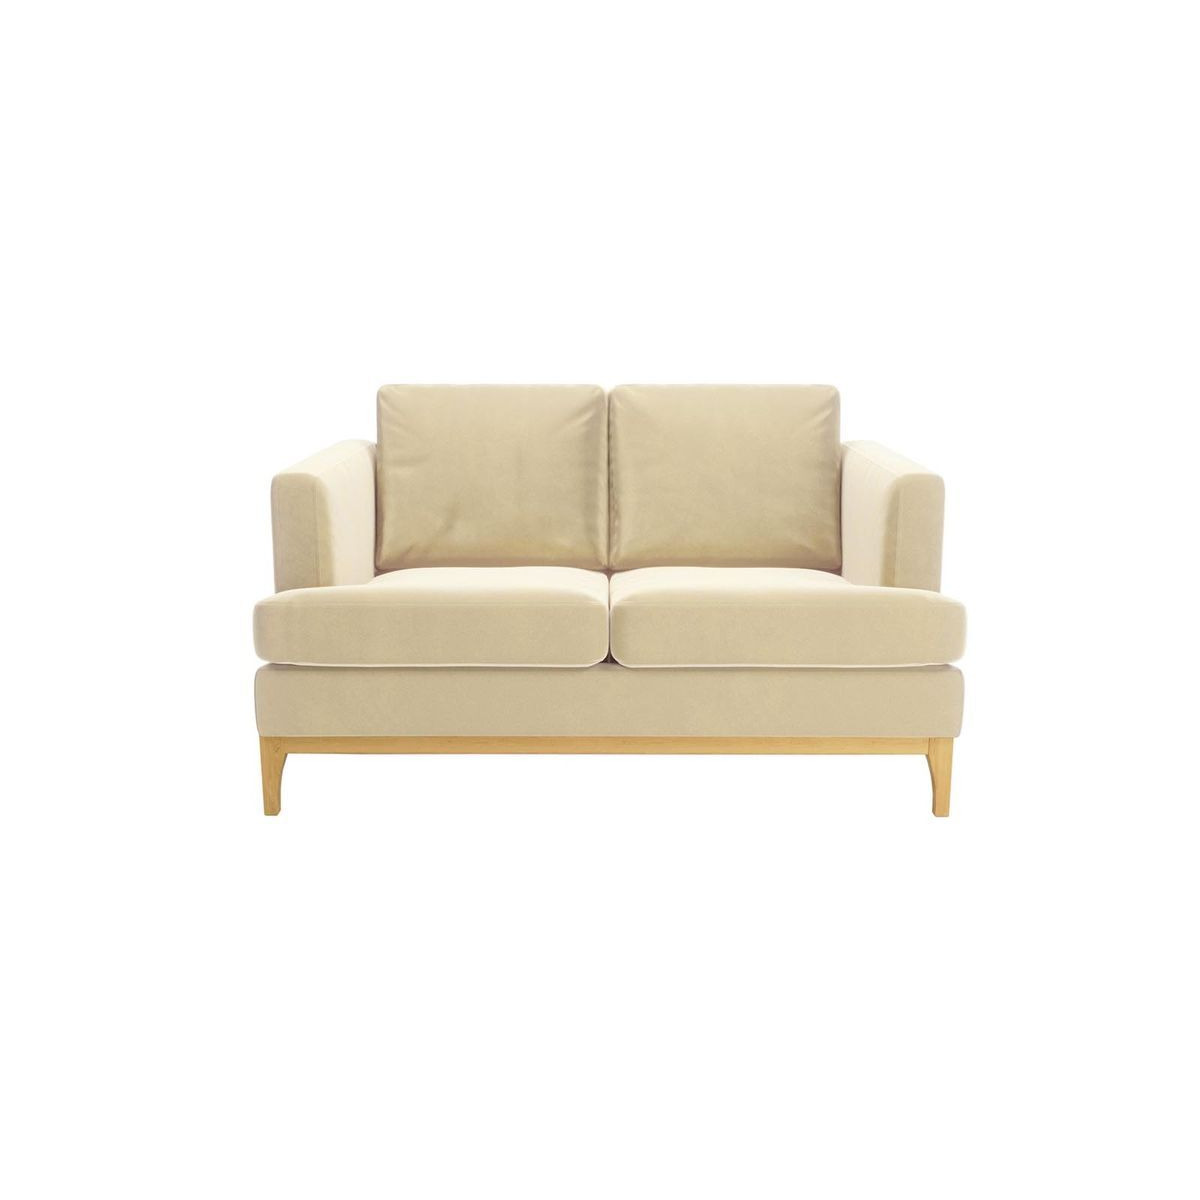 Scarlett 2 Seater Sofa, light beige, Leg colour: like oak - image 1